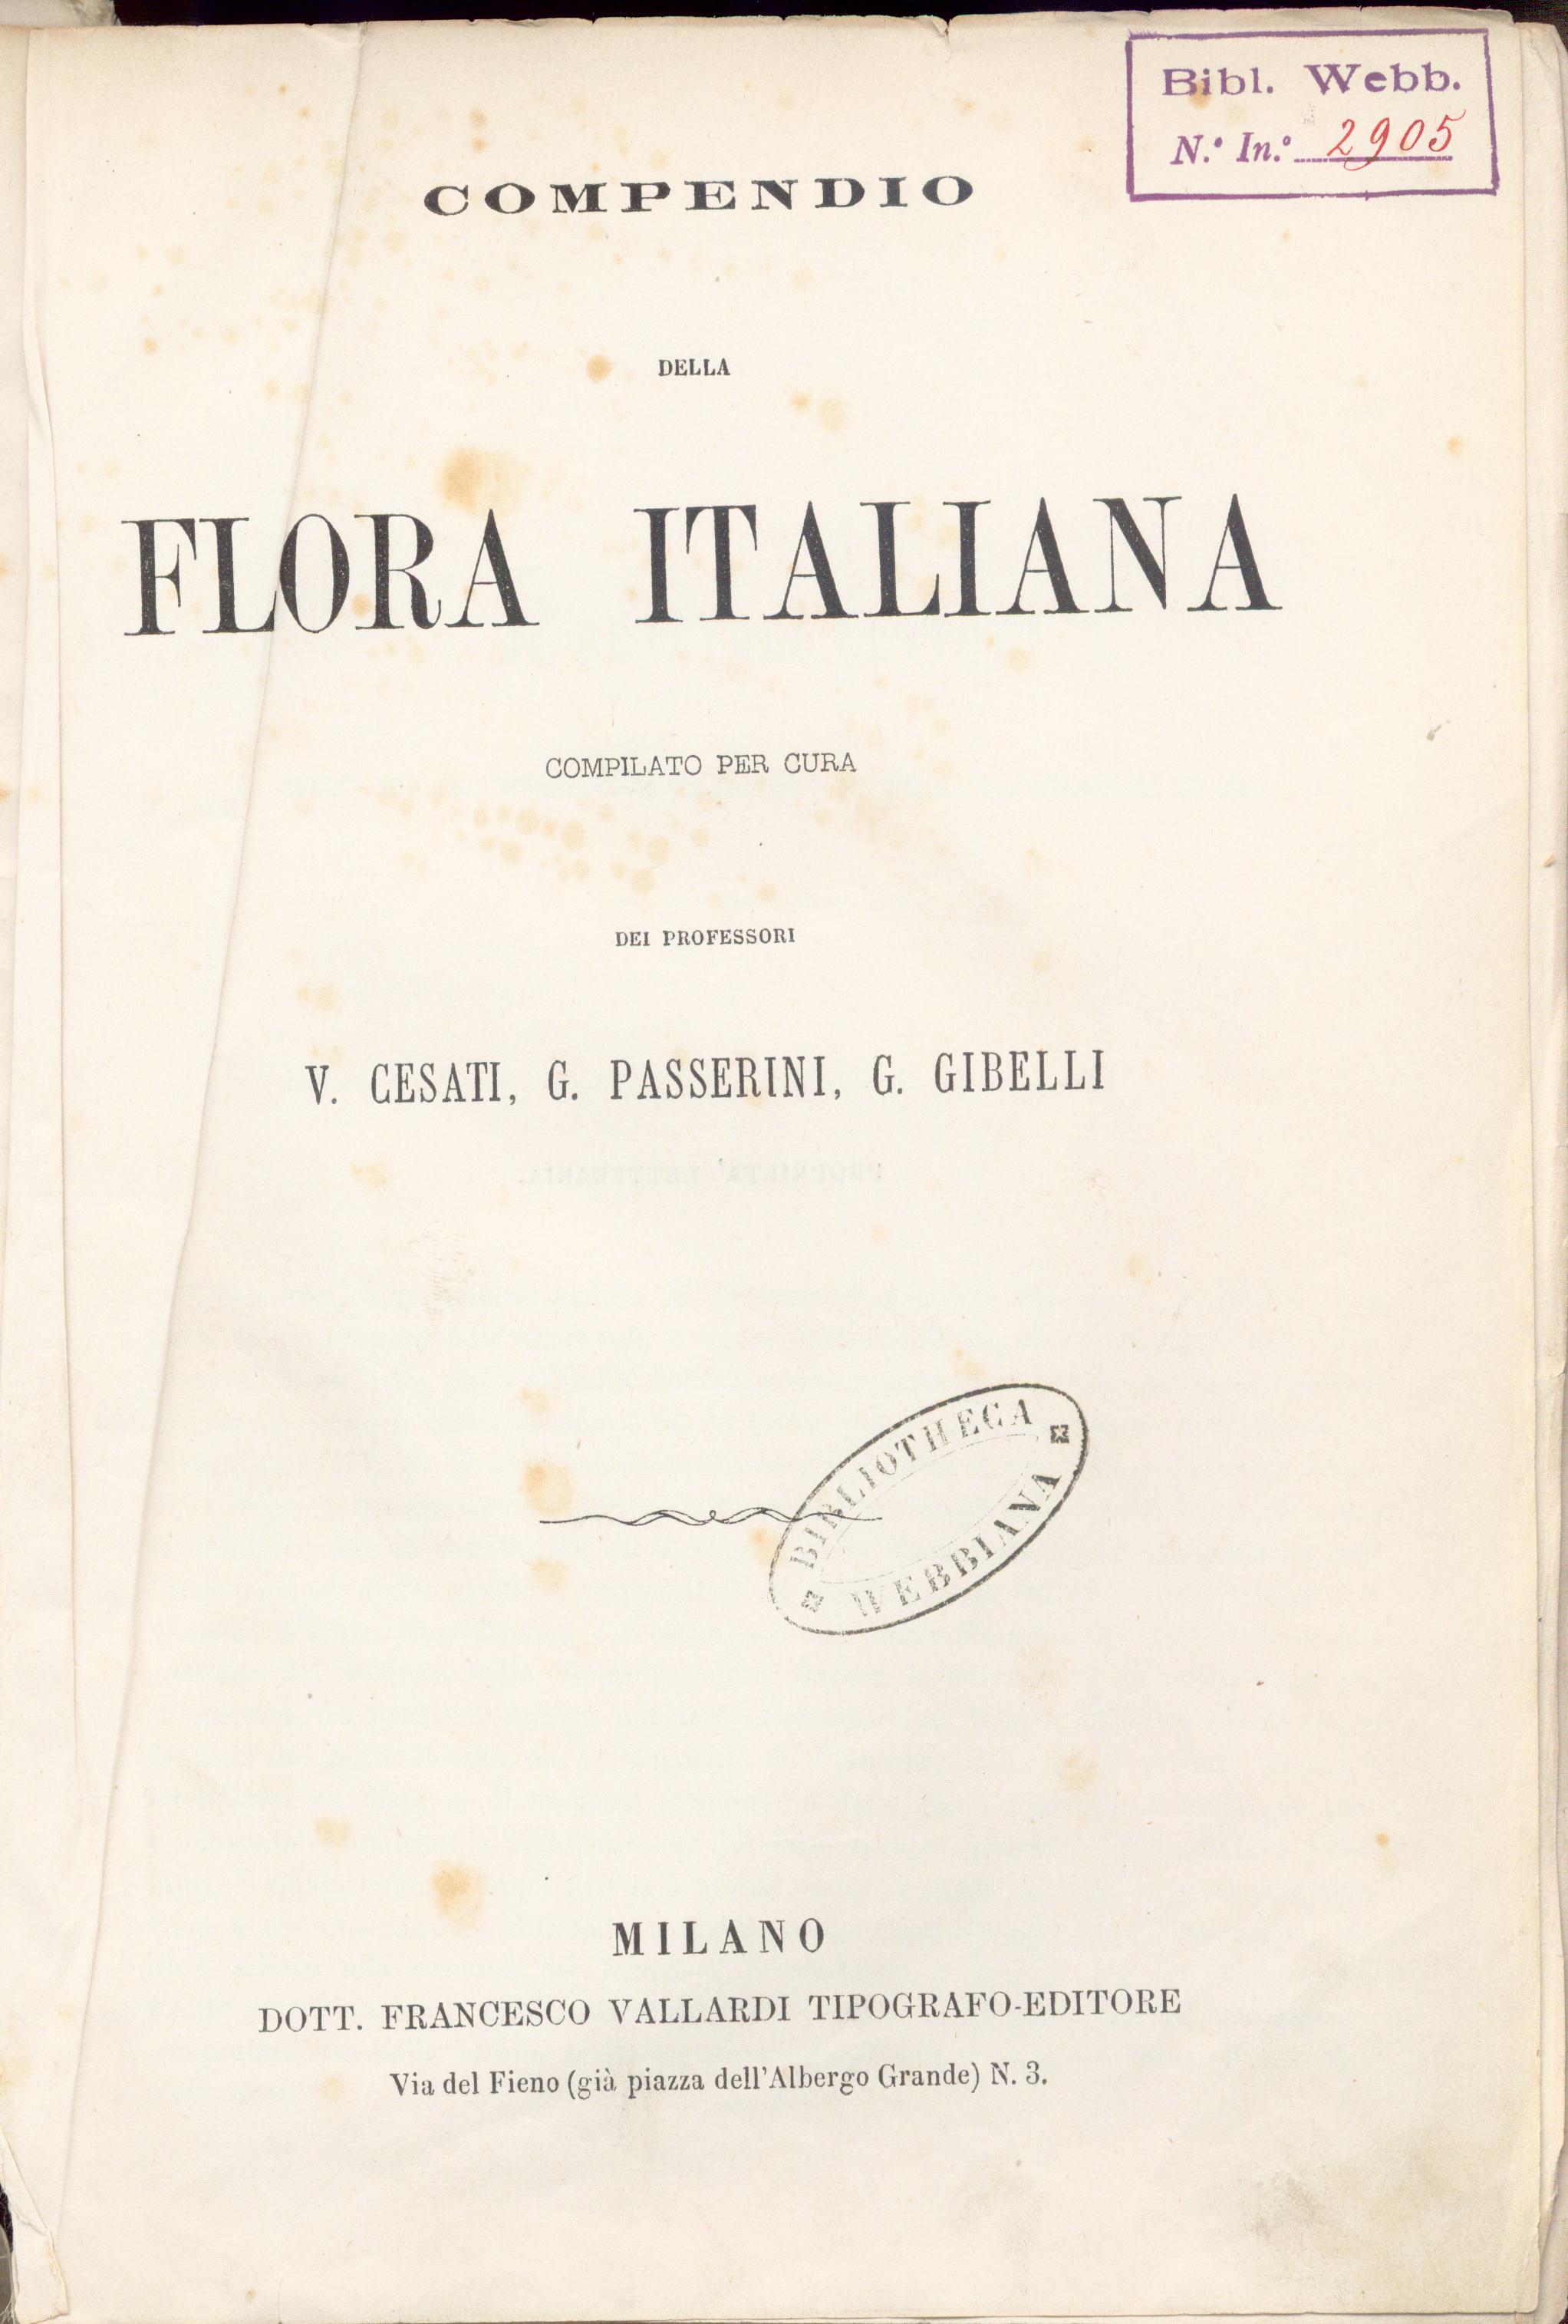 Compendio della flora italiana